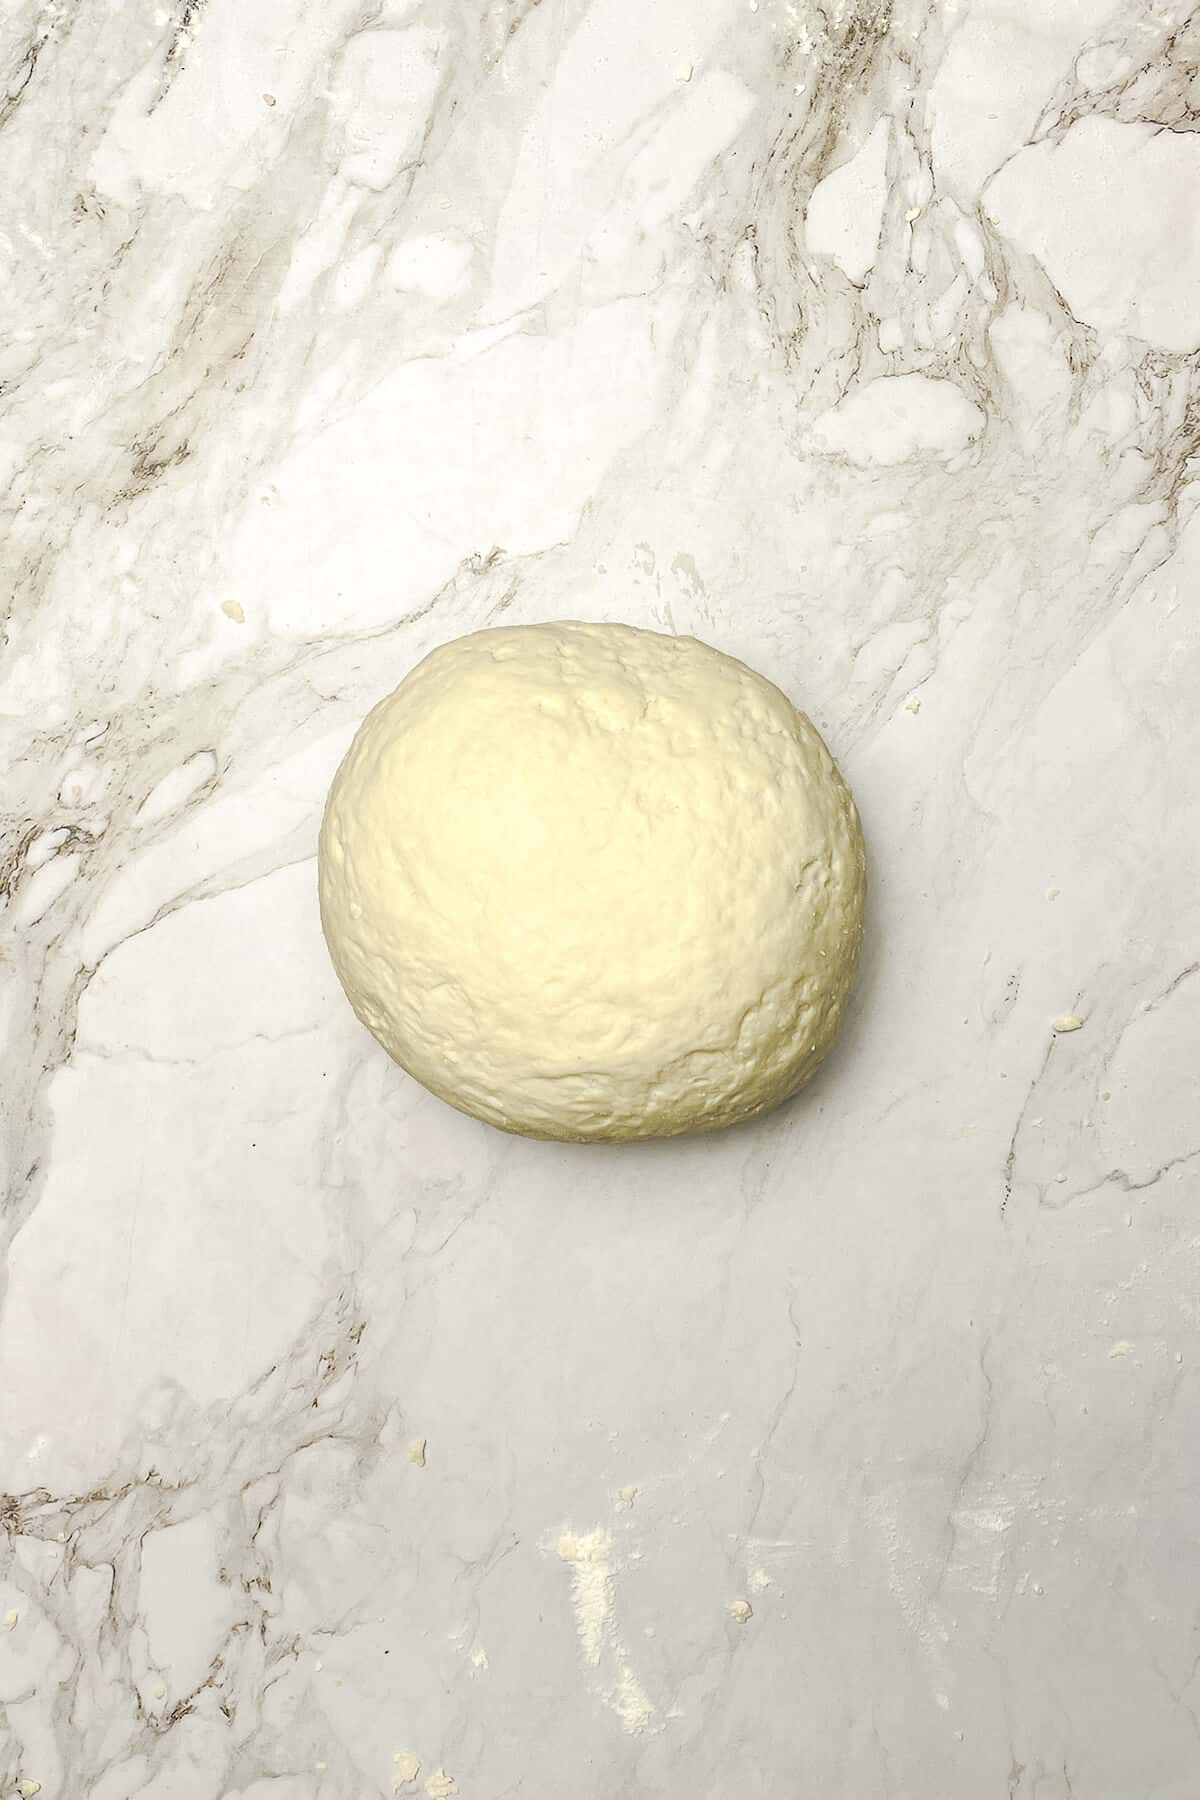 dough ball on a counter